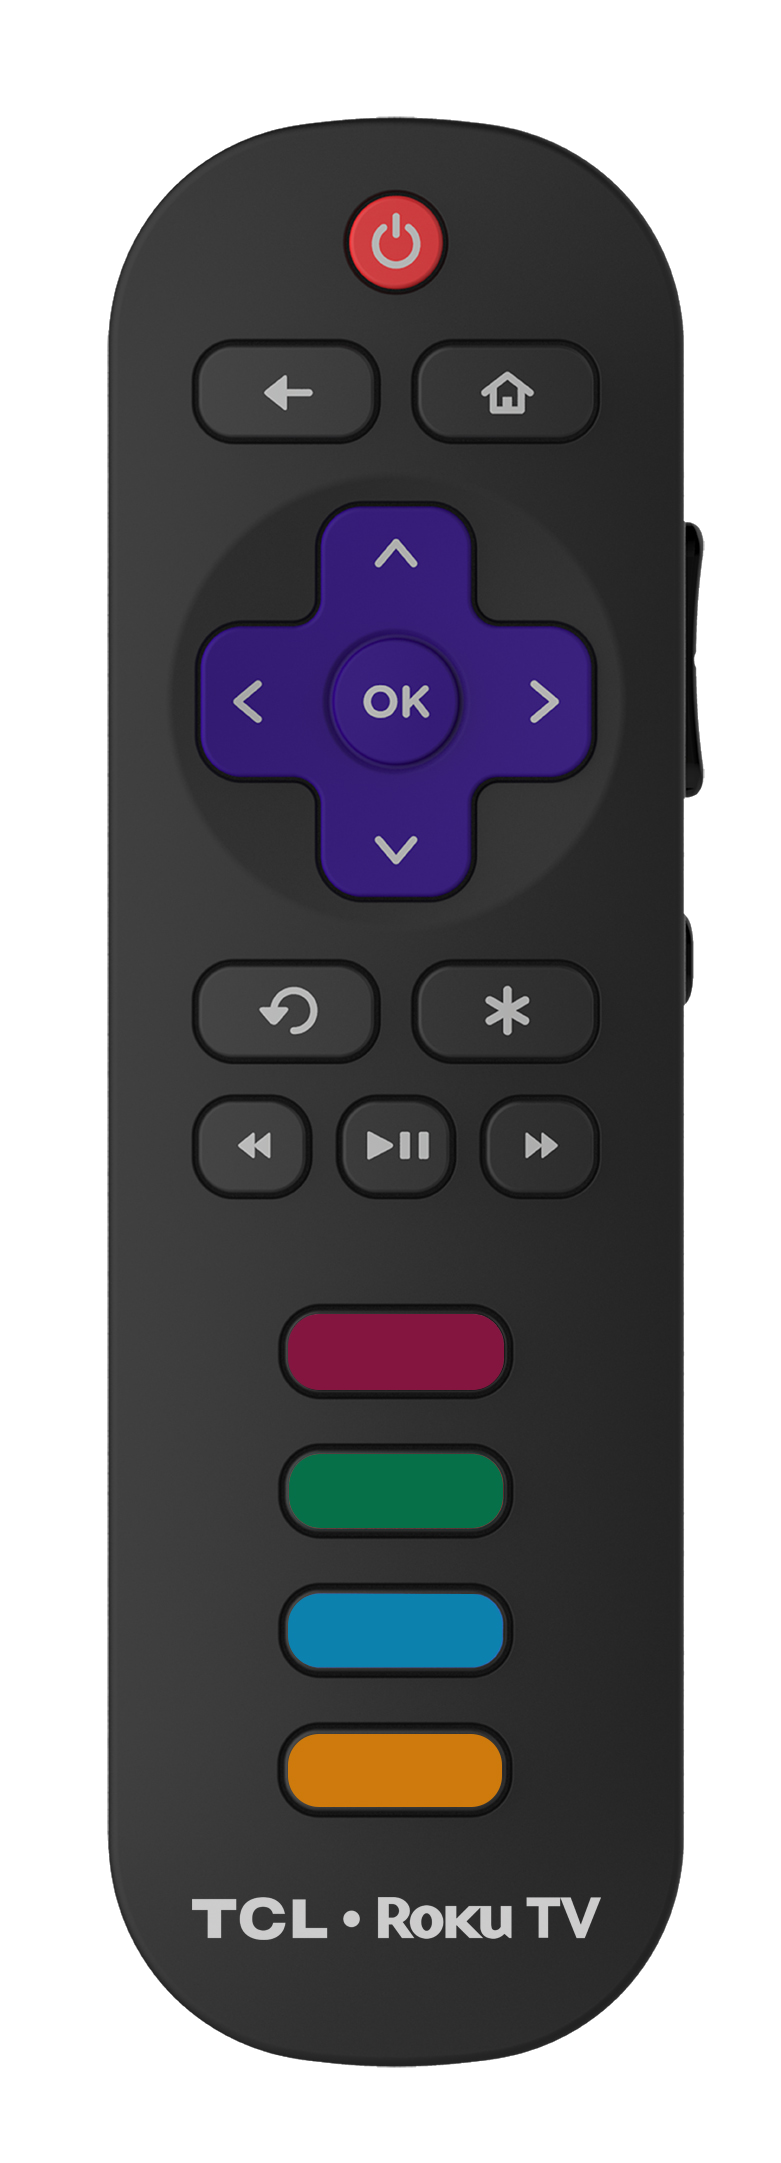 xbox tv remote code